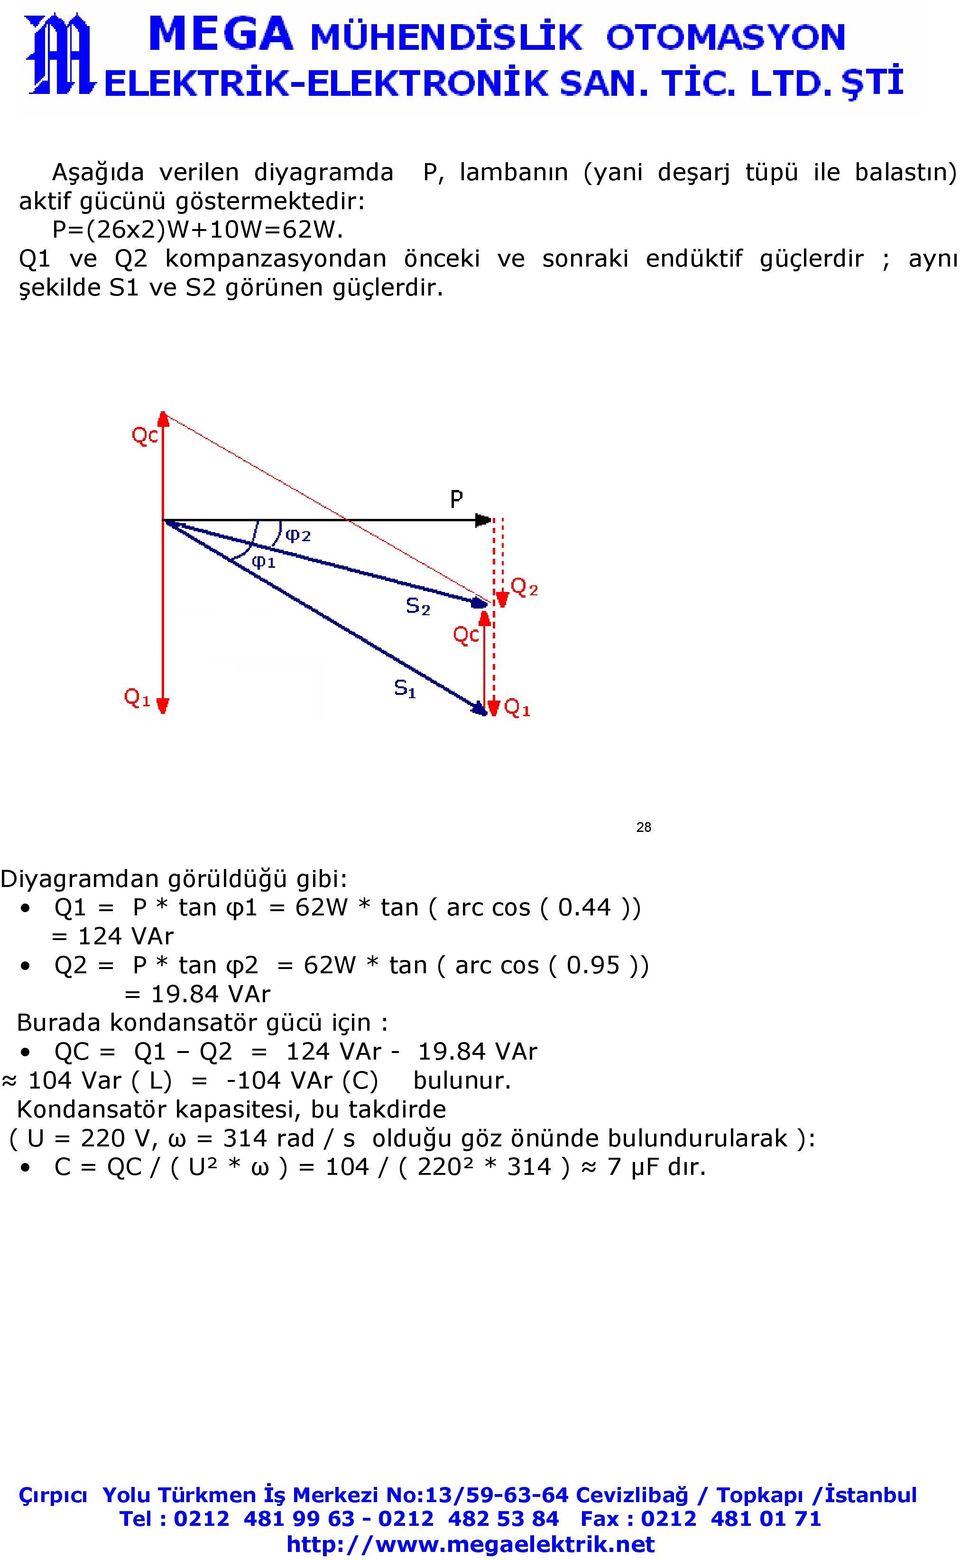 28 Diyagramdan görüldüğü gibi: Q1 = P * tan φ1 = 62W * tan ( arc cos ( 0.44 )) = 124 VAr Q2 = P * tan φ2 = 62W * tan ( arc cos ( 0.95 )) = 19.